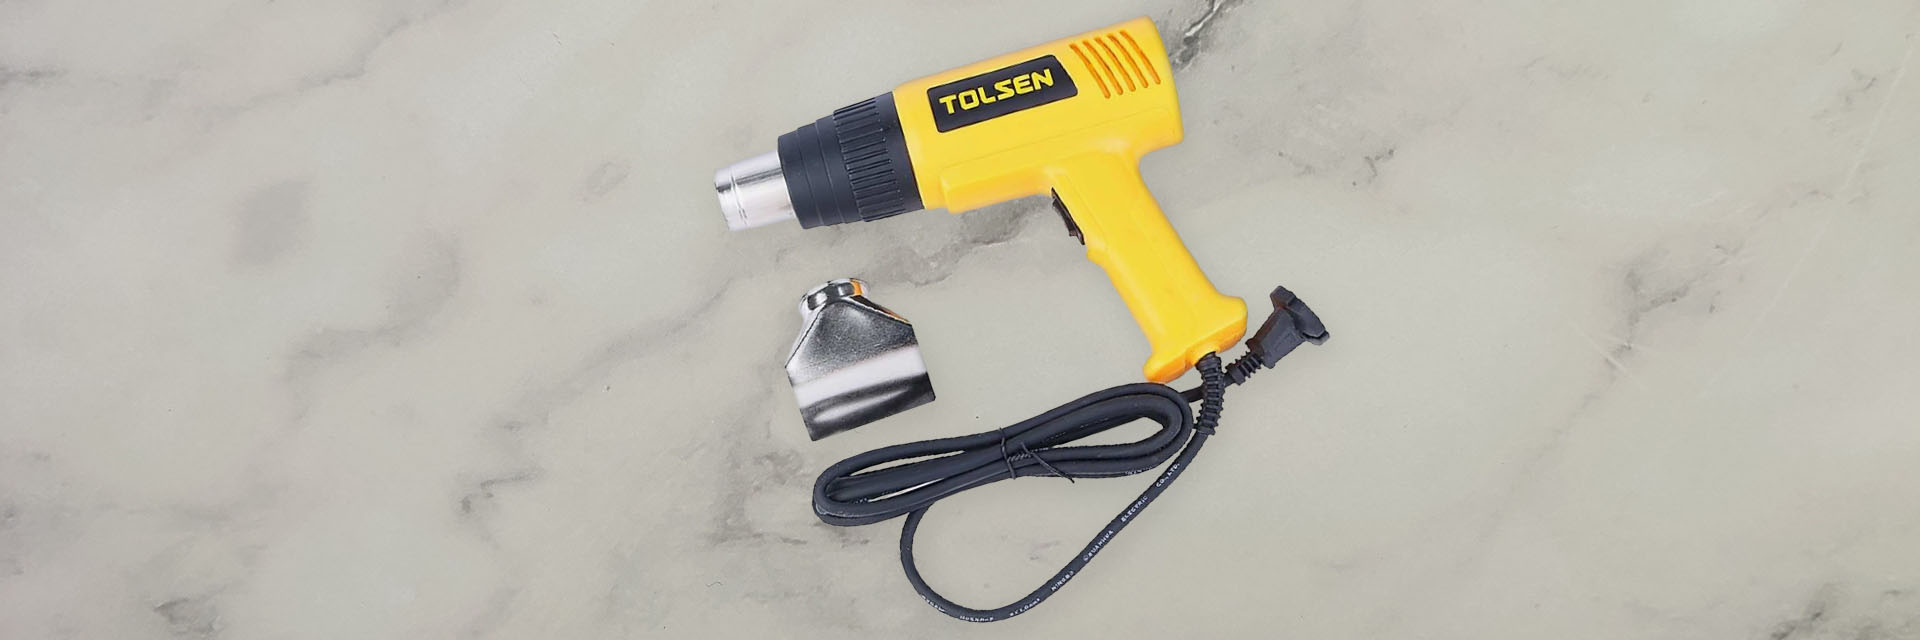 Power tools - Máy khò Tolsen